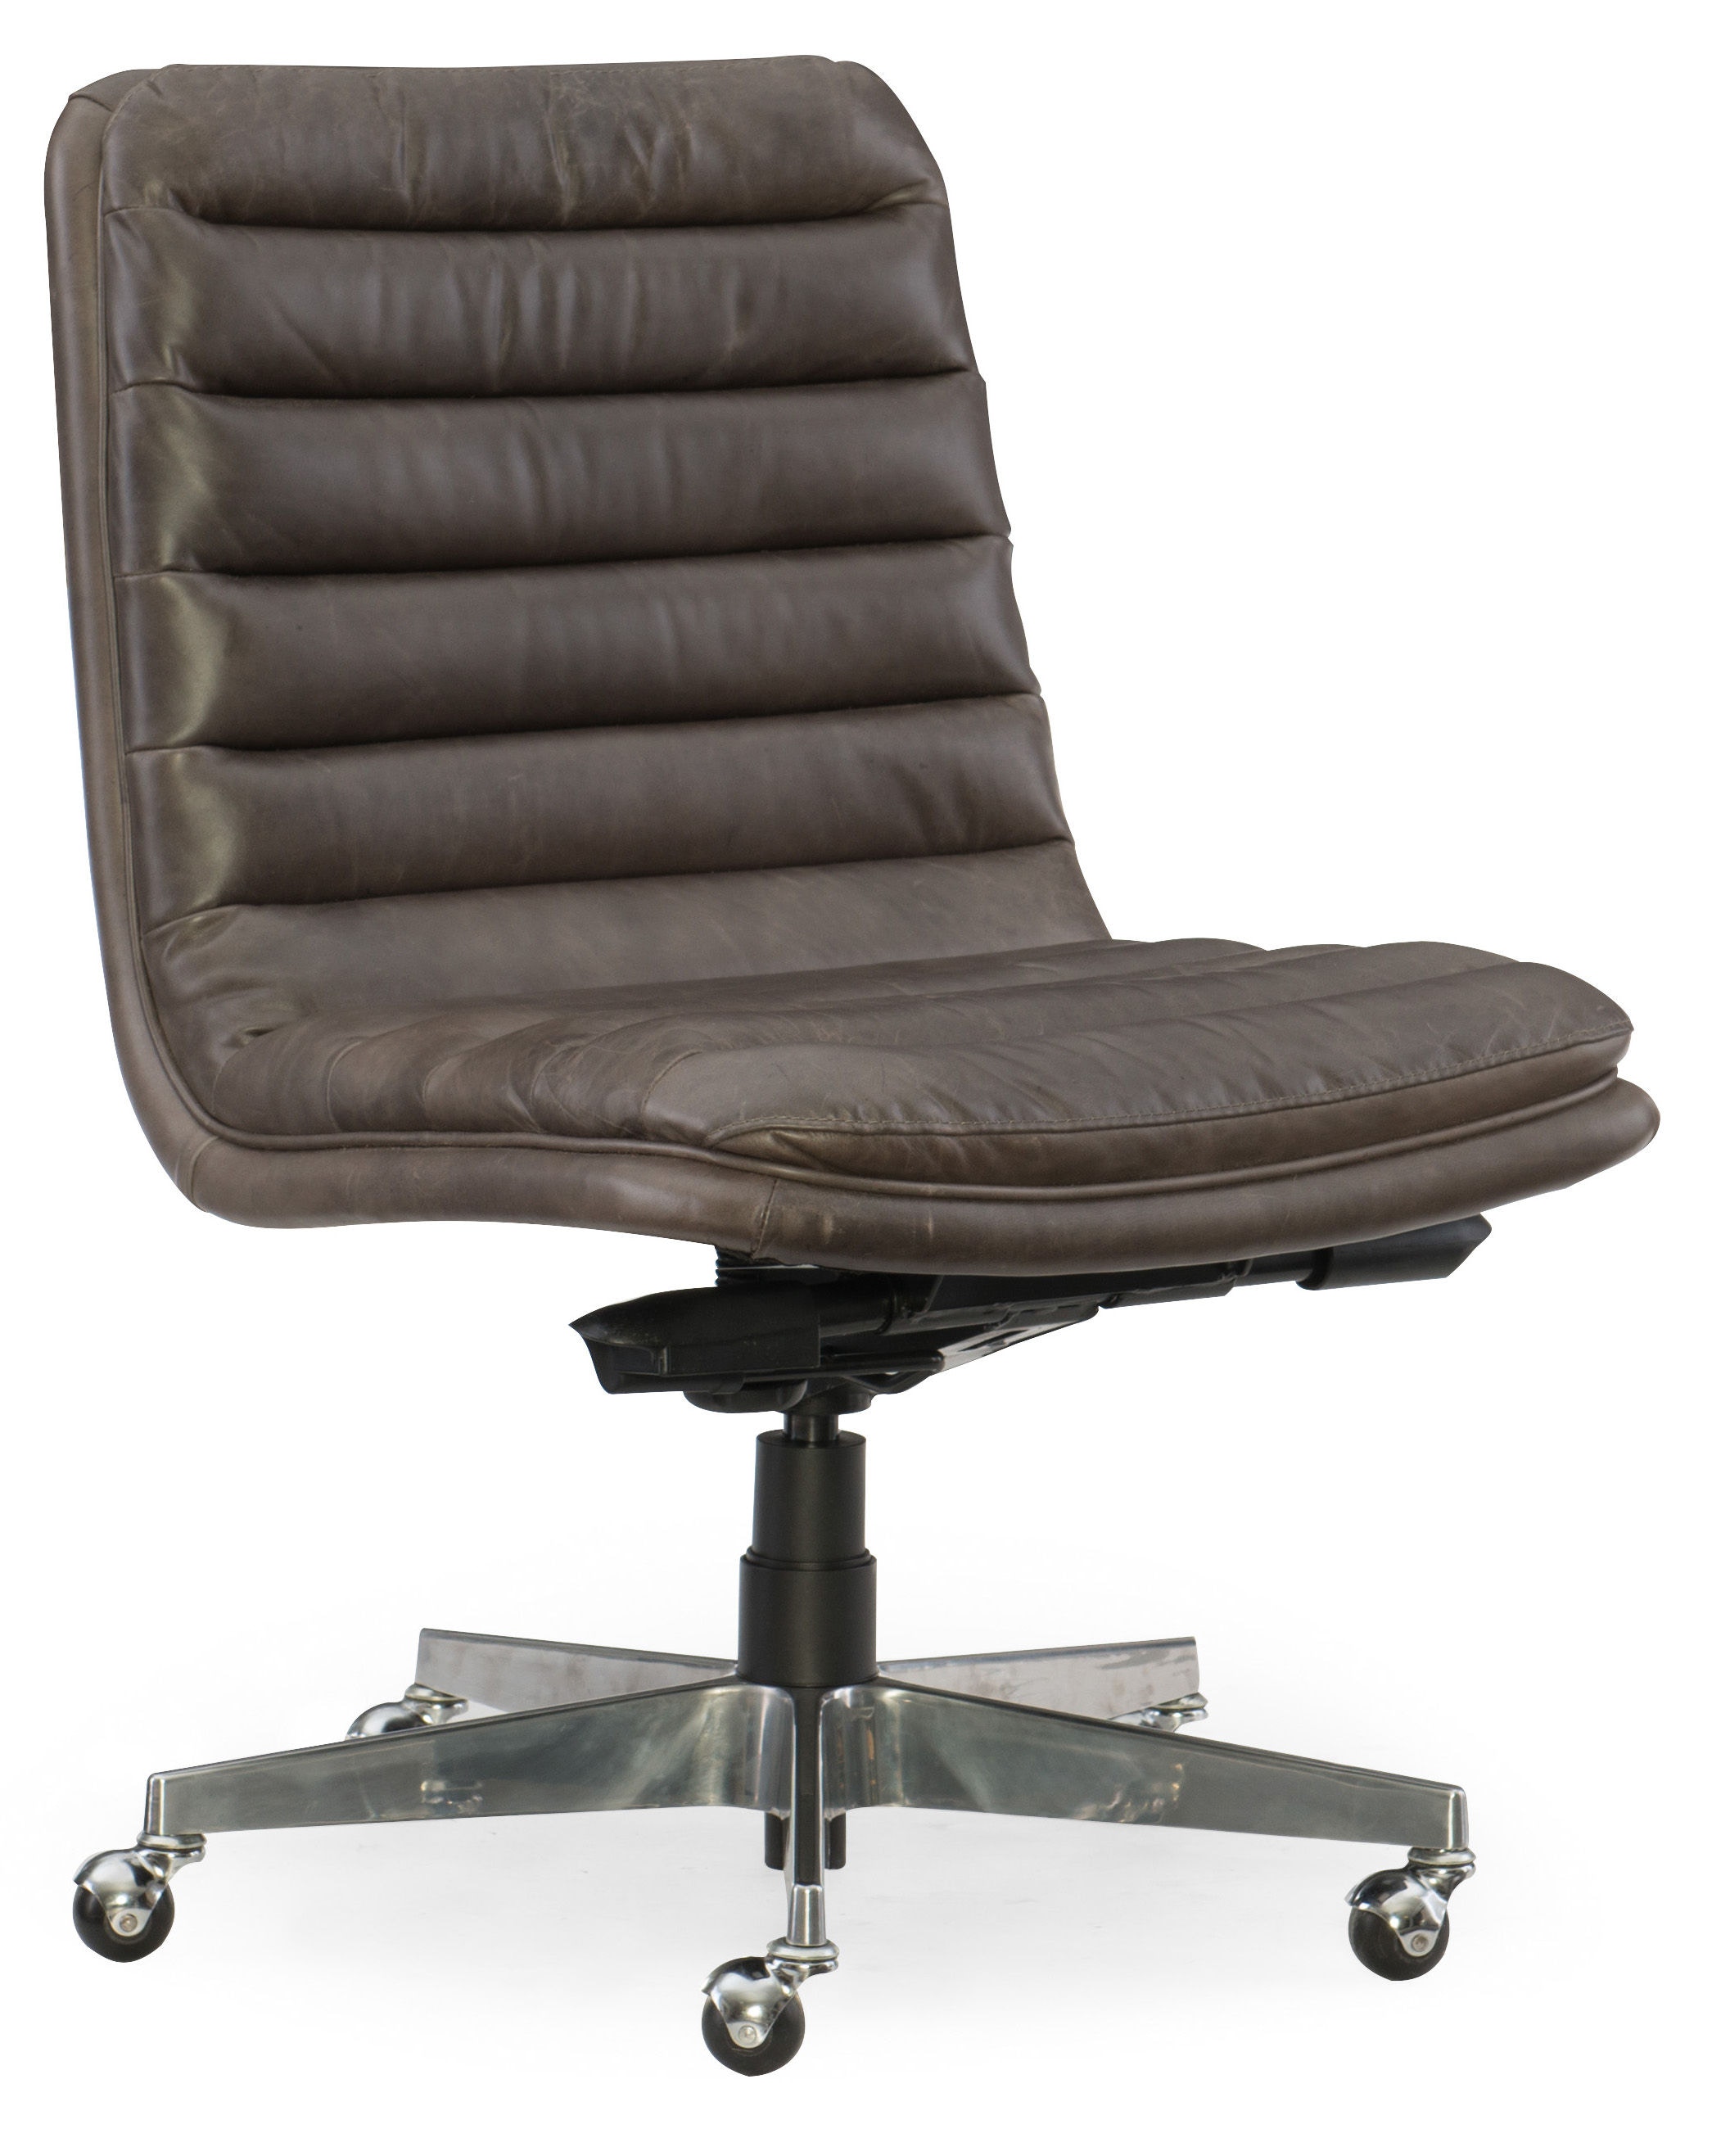 Hooker Furniture Home Office Wyatt Executive Swivel Tilt Chair 